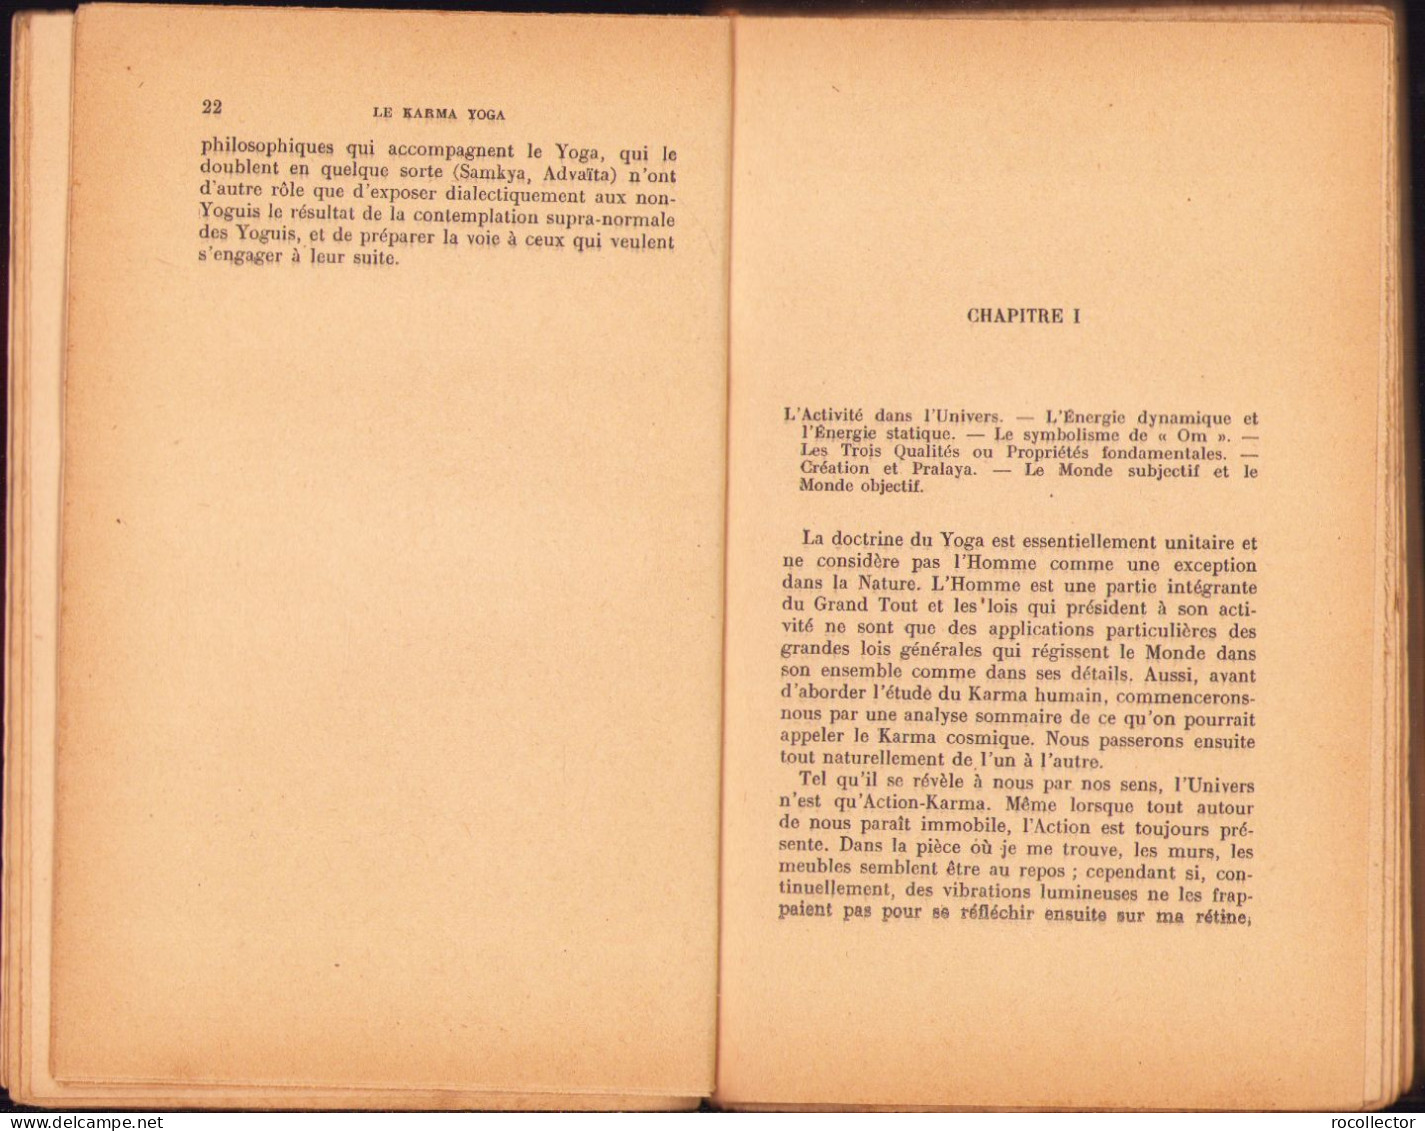 Le Karma Yoga Ou L’action Dans La Vie Selon La Sagesse Hindoue Par C. Kerneiz, 1939, Paris C1265 - Alte Bücher